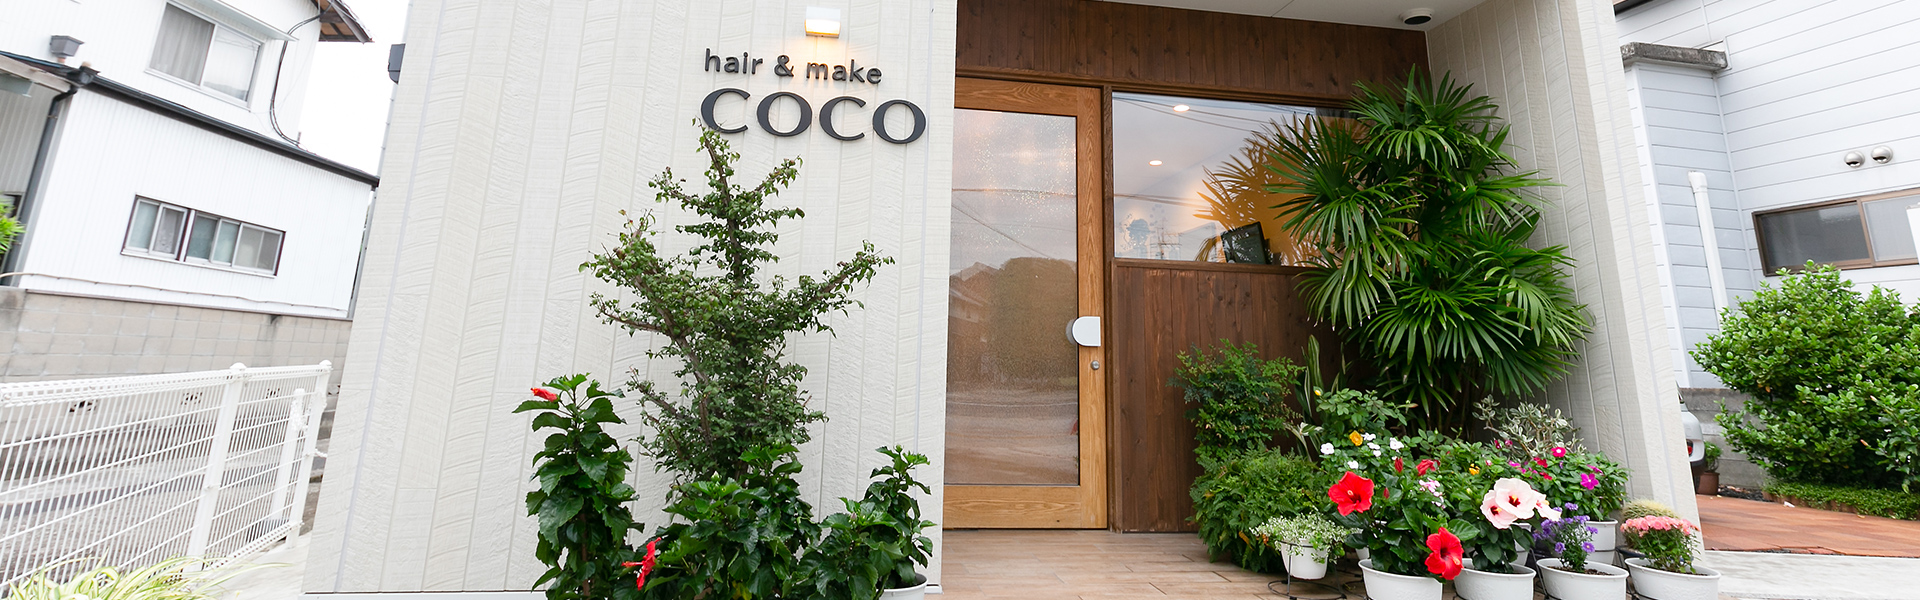 hair&make COCO